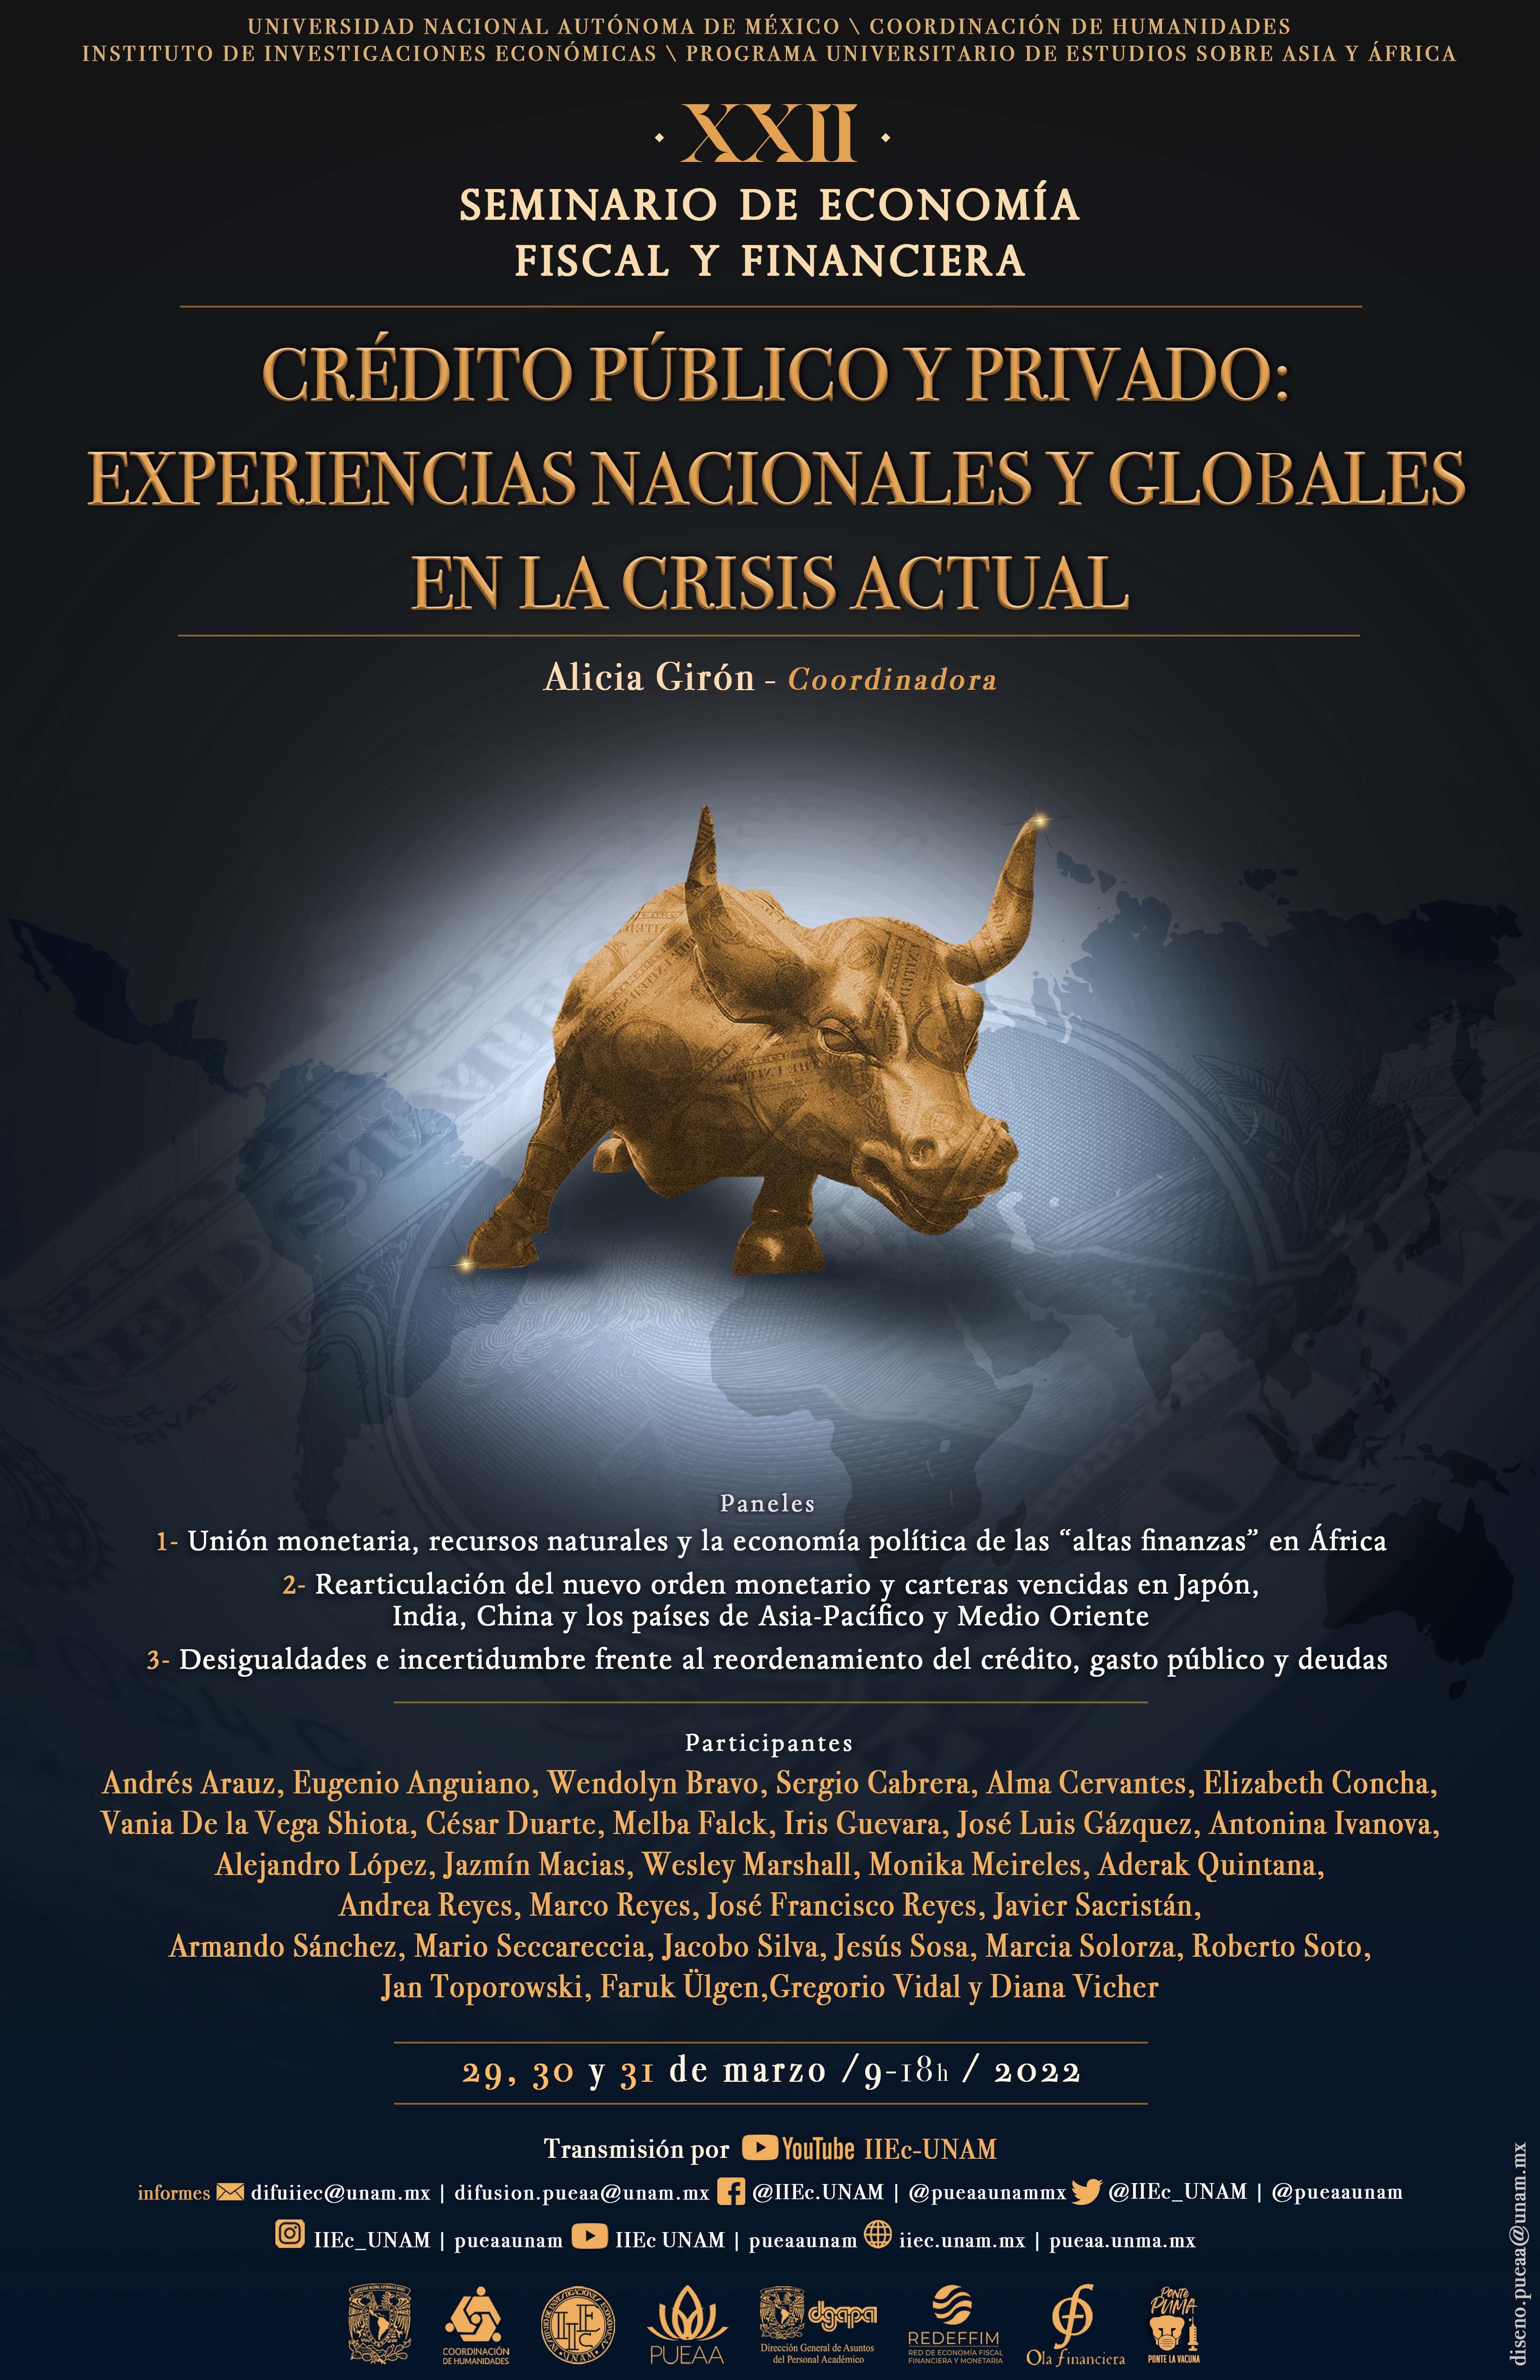 XXII Seminario de Economía Fiscal y Financiera